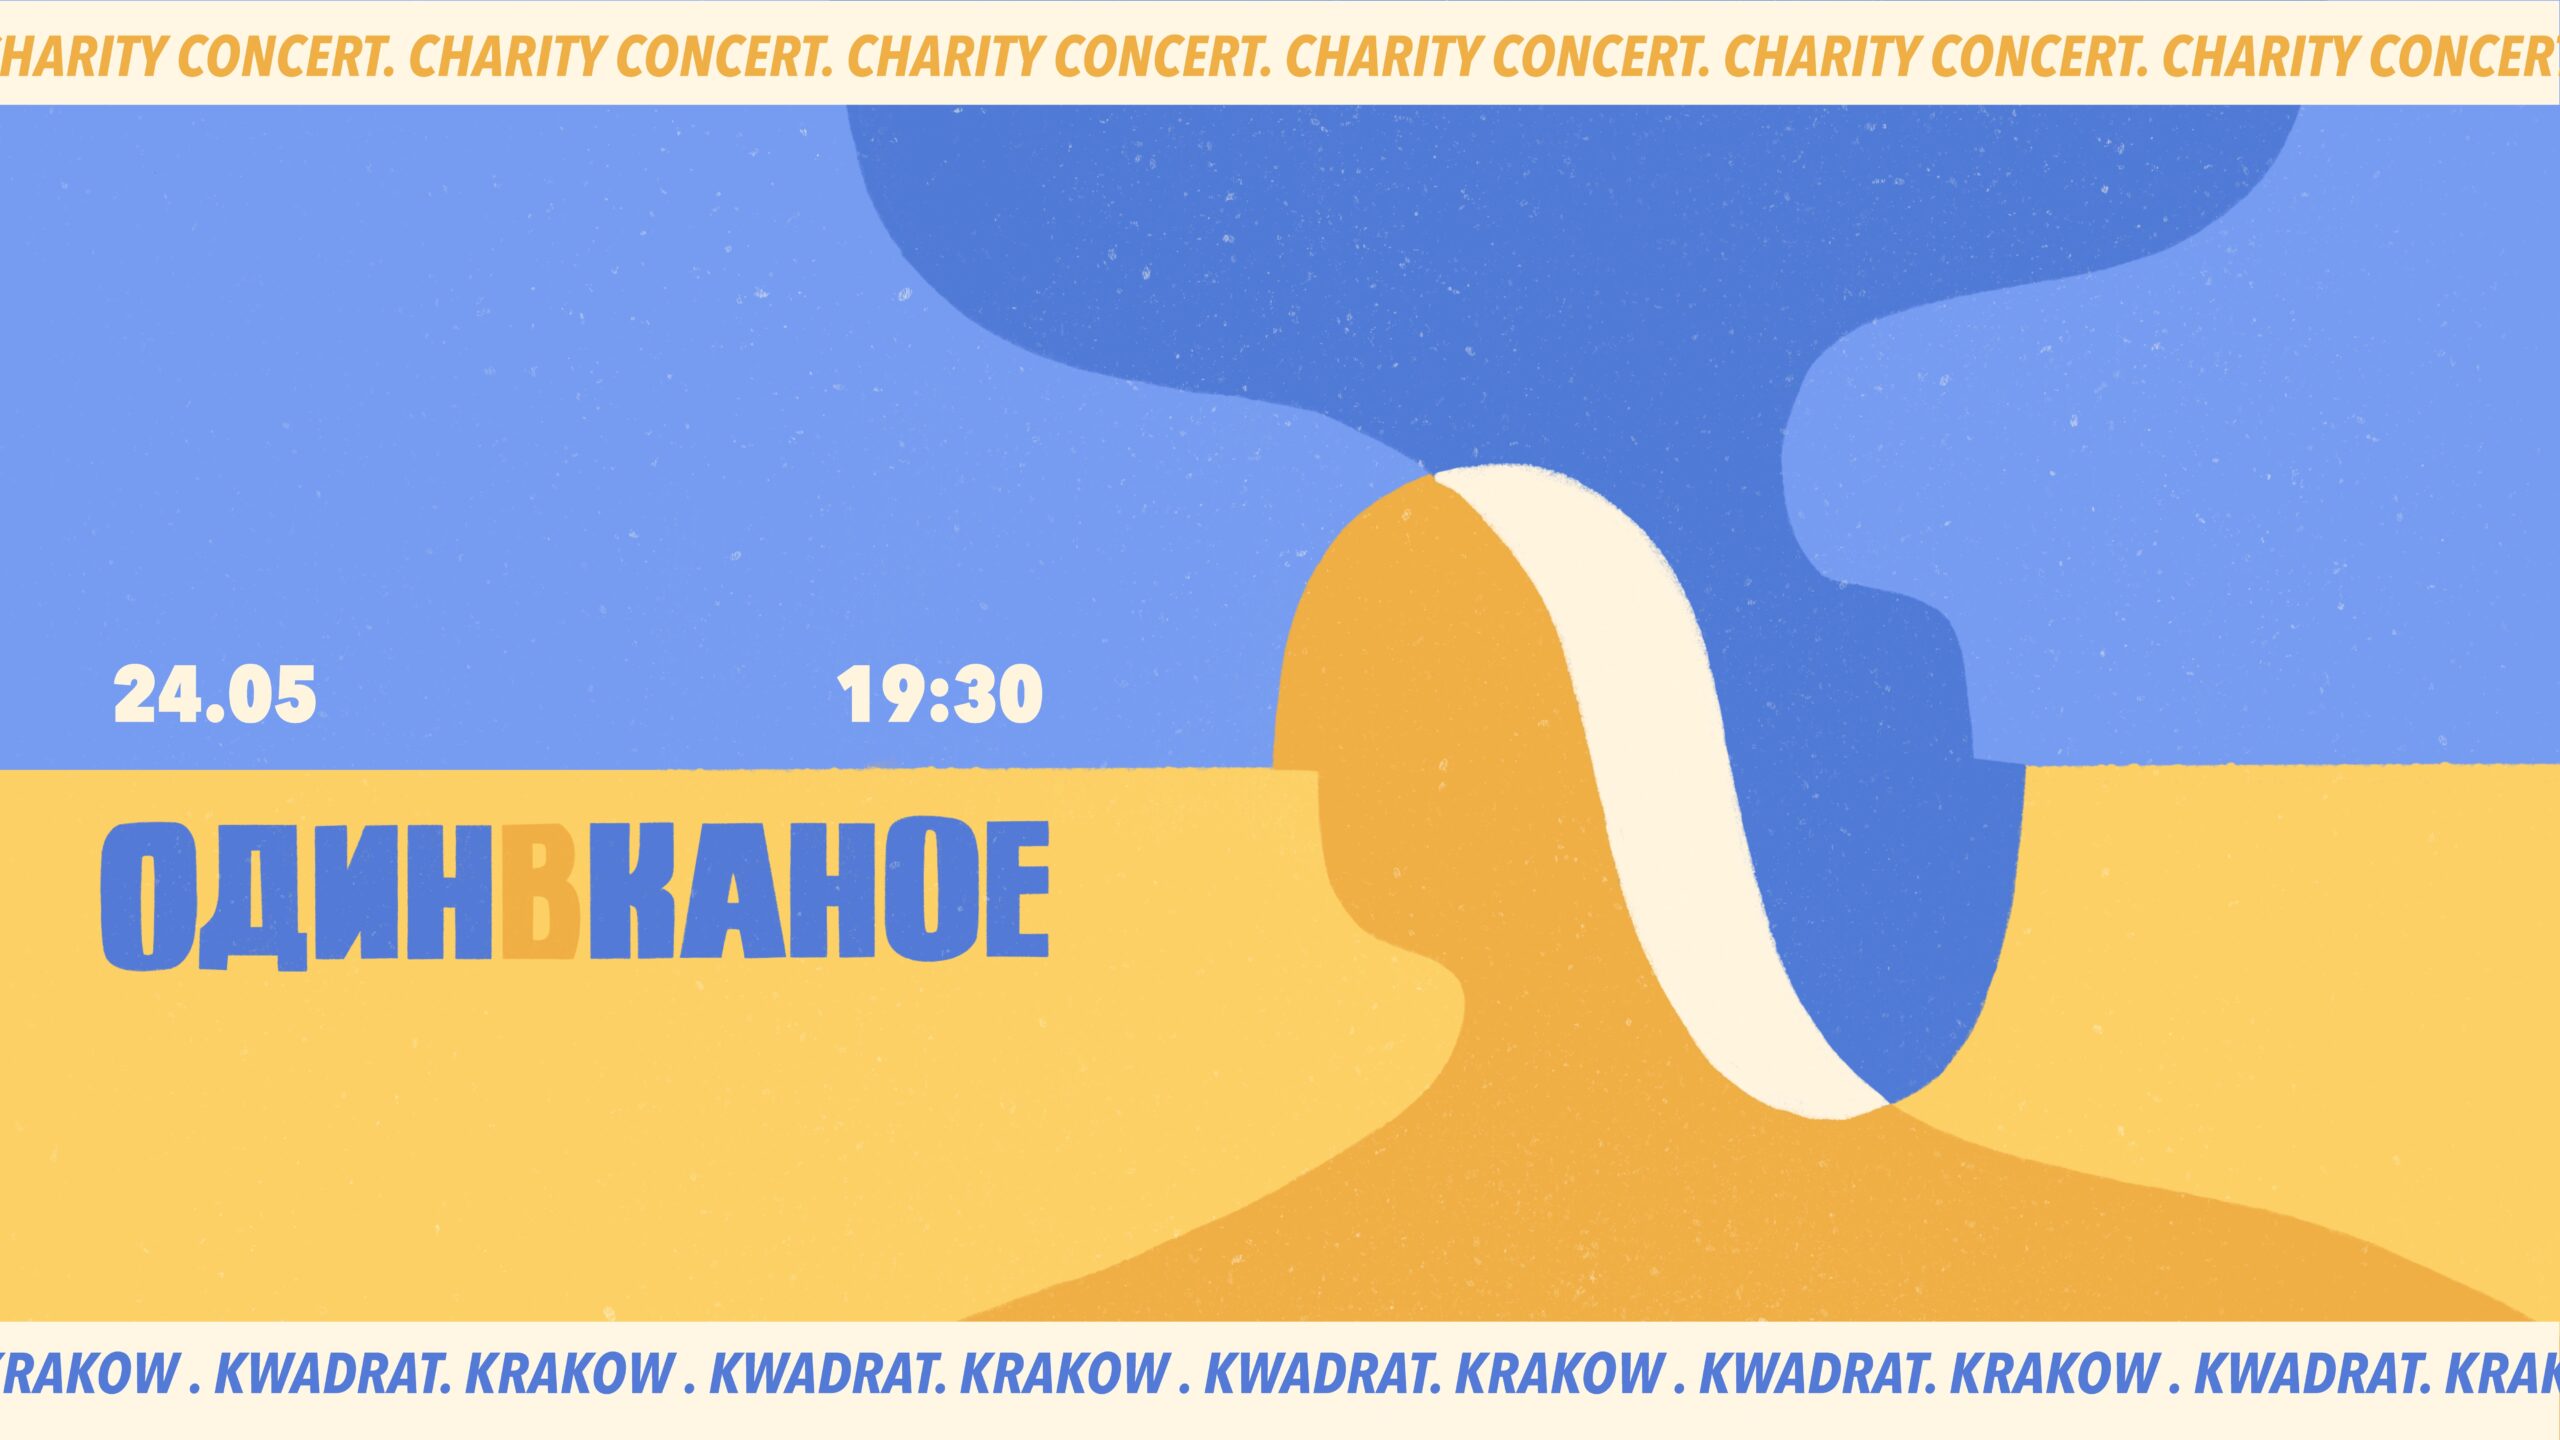 У Кракові відбудеться благодійний концерт “Один в каное” krk scaled